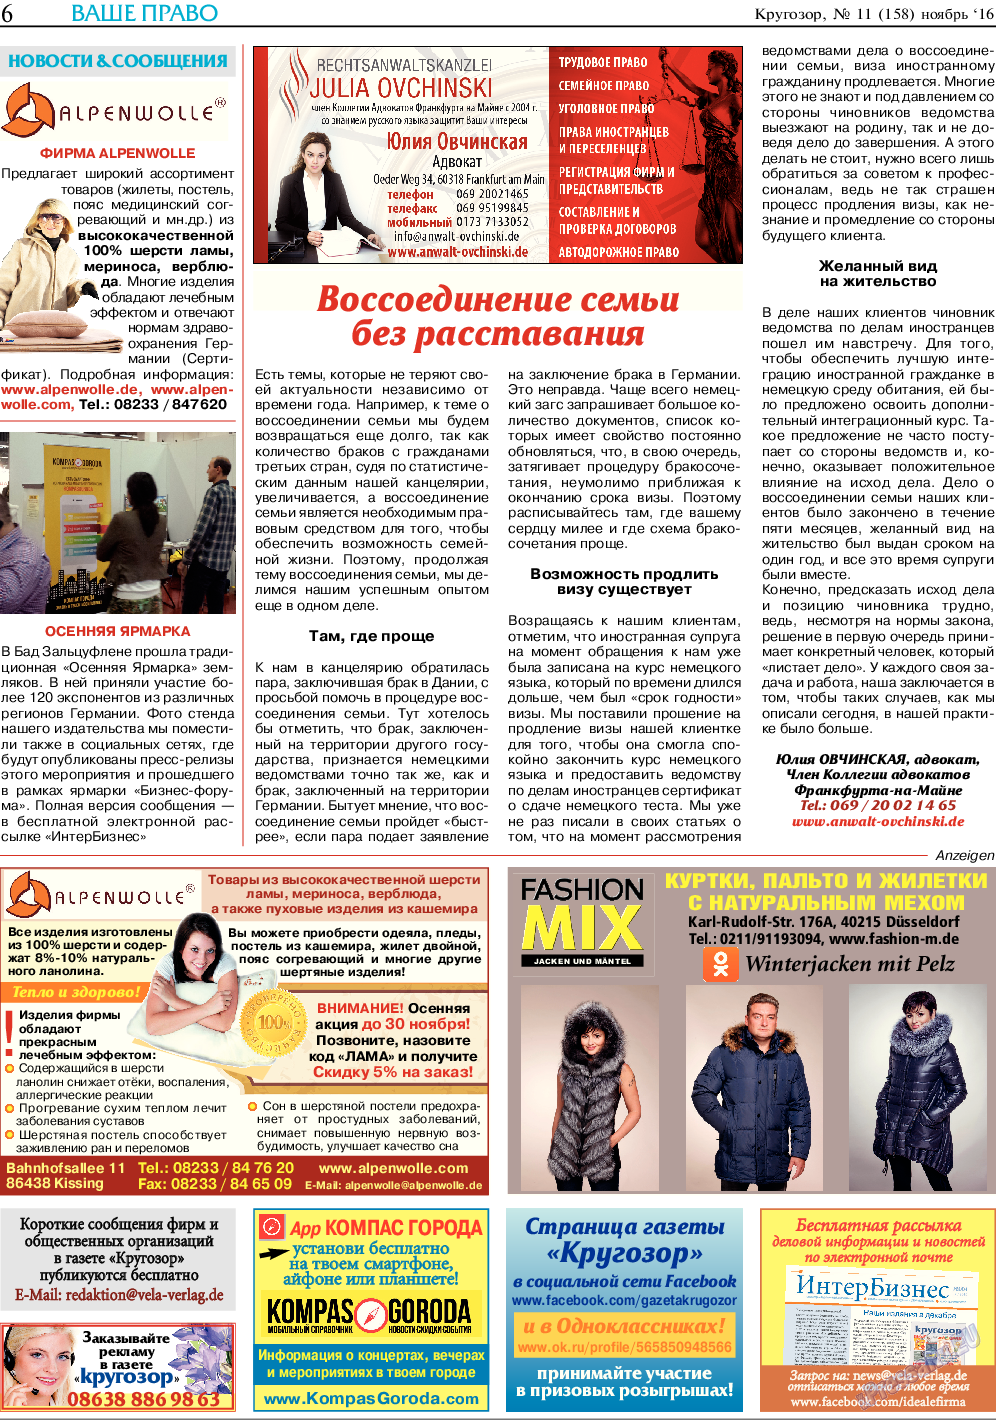 Кругозор, газета. 2016 №11 стр.6